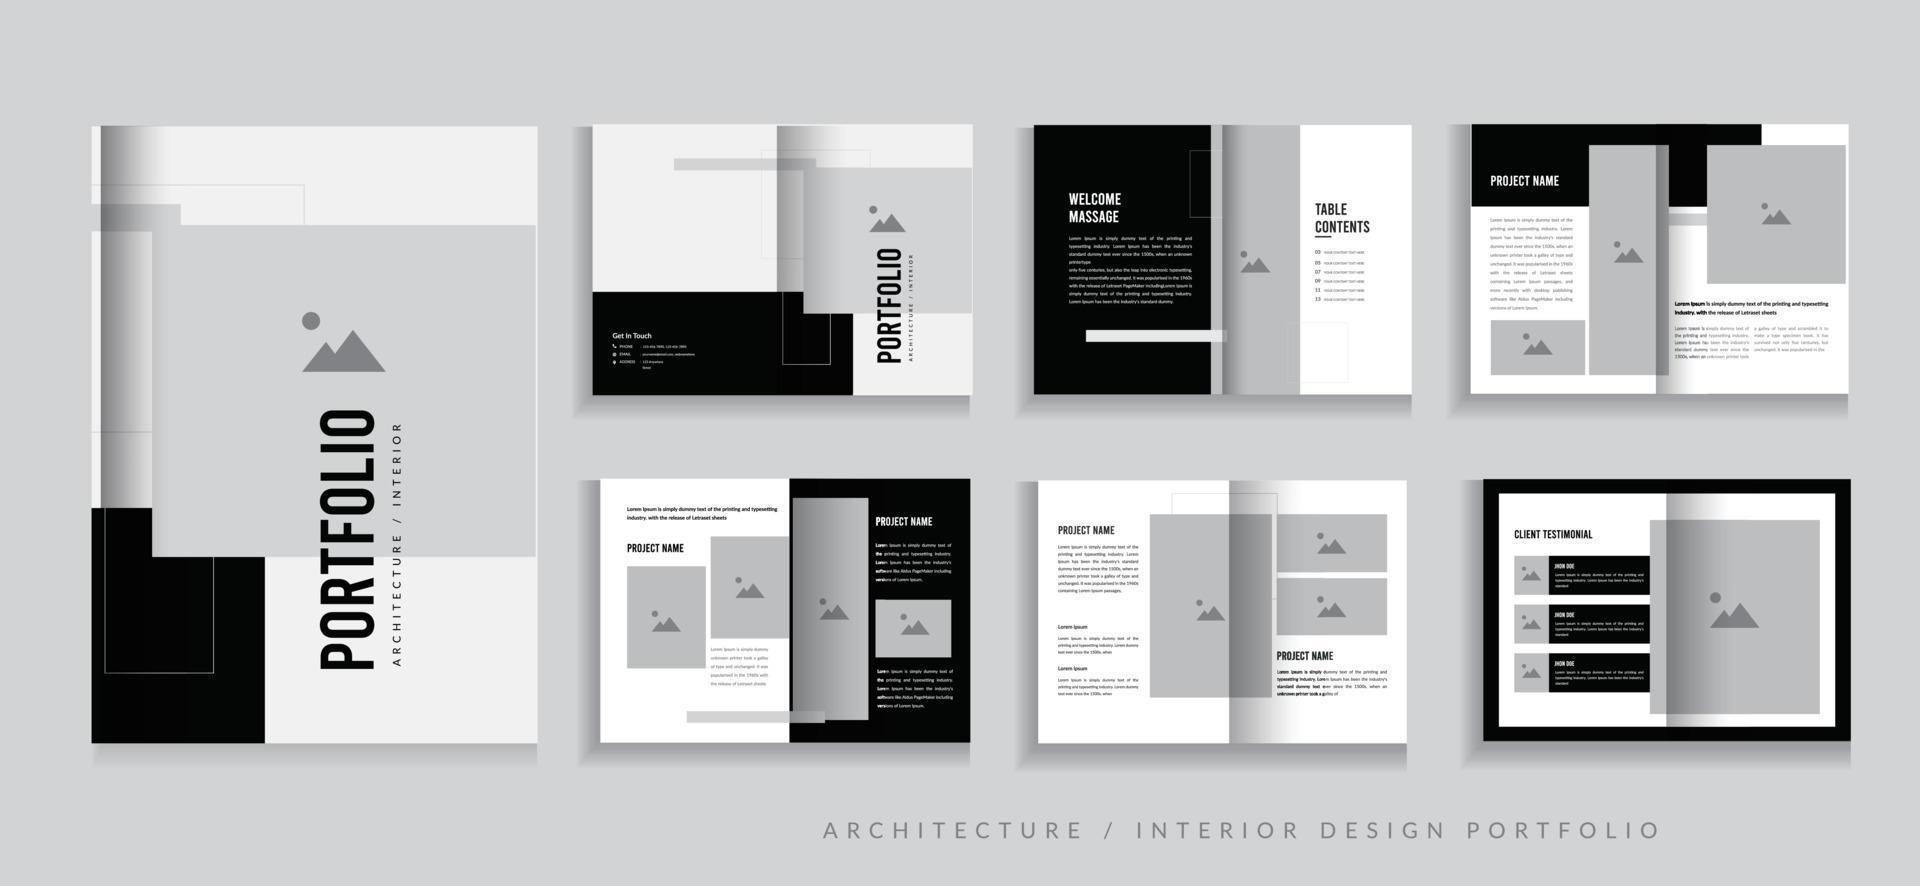 Portfolio Design Architecture Portfolio Interior Portfolio Design, Multipurpose Portfolio Design vector